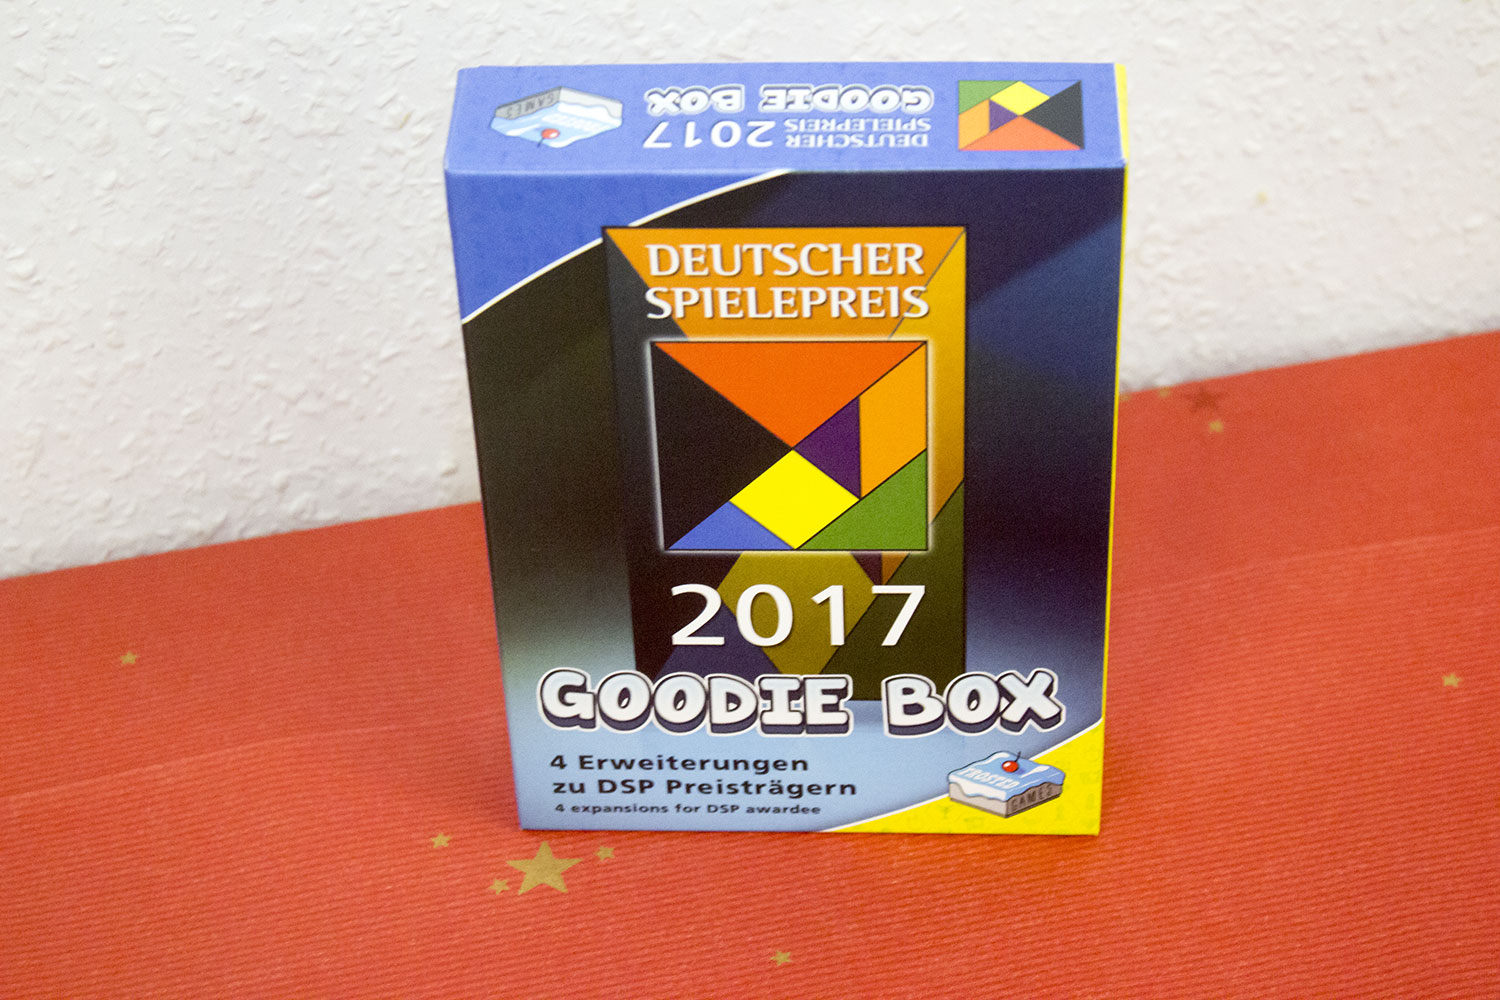 Erste Bilder: Goodie Box - Deutscher Spielepreis 2017 